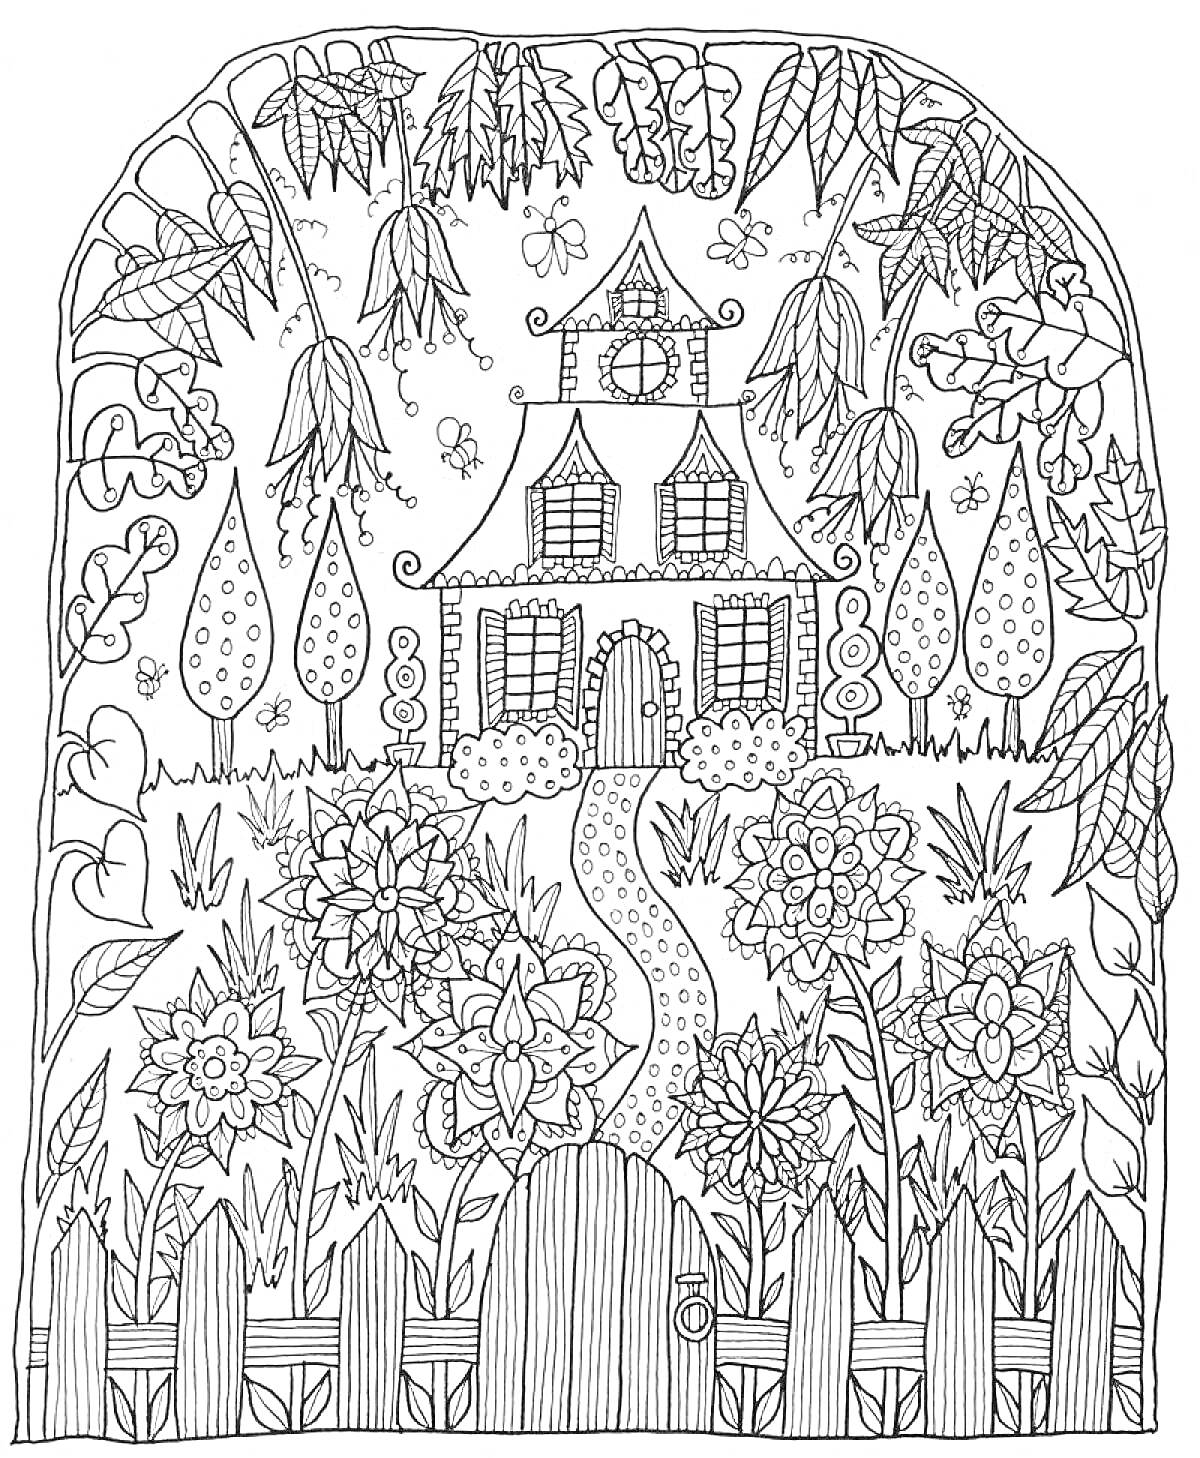 Раскраска Дом в саду среди цветов и растений за забором